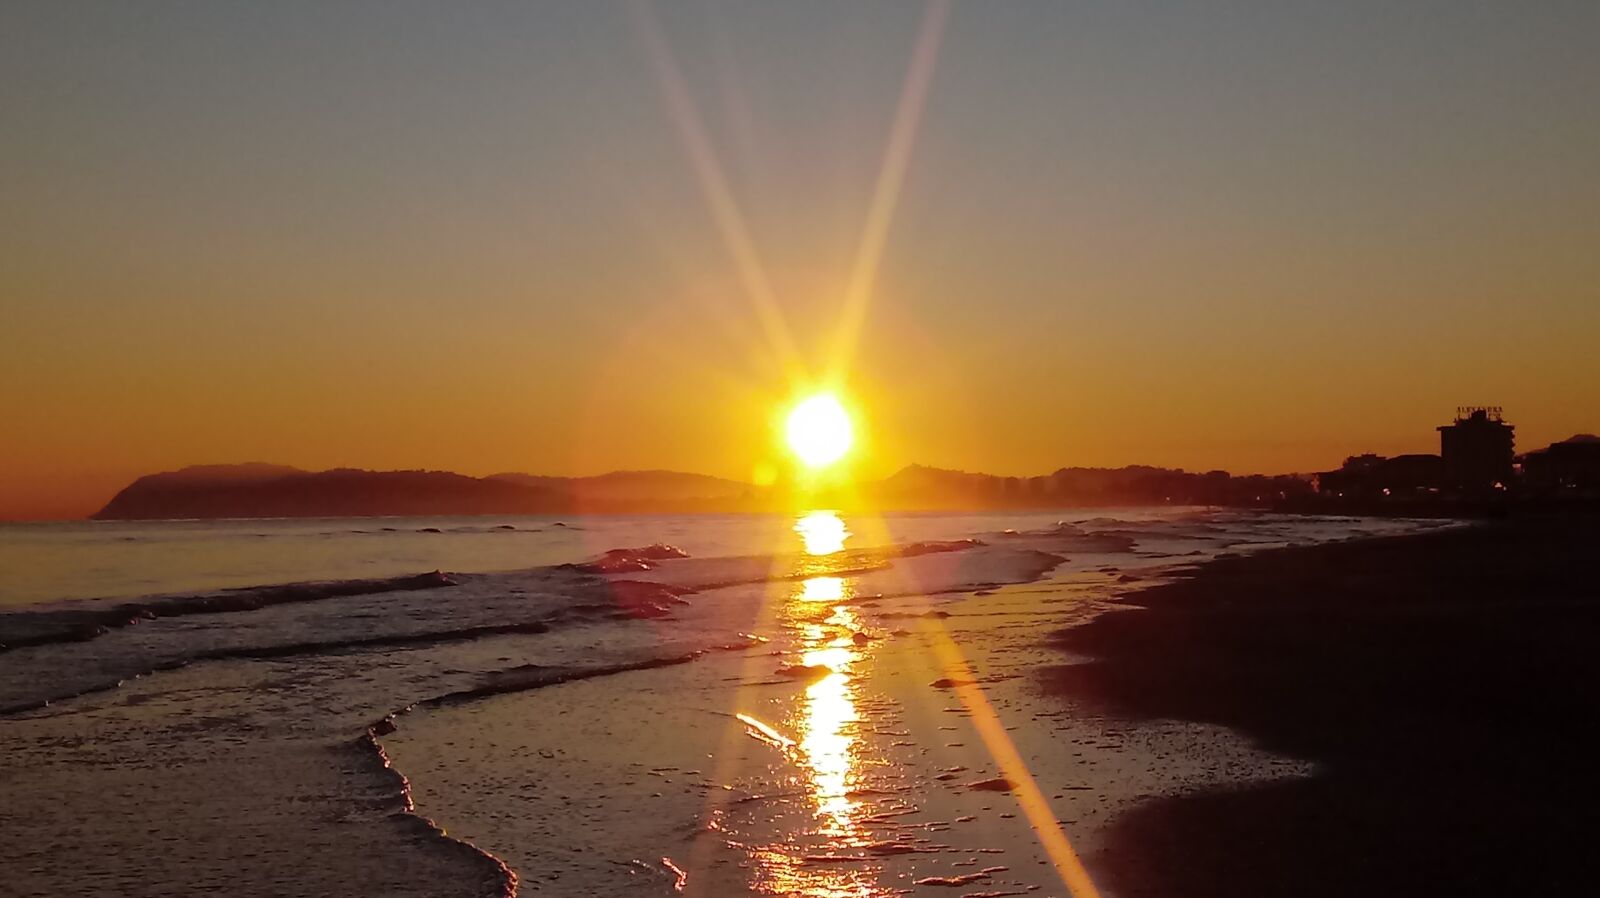 LG LM-X410.F sample photo. Sunrise, sea, riccione photography